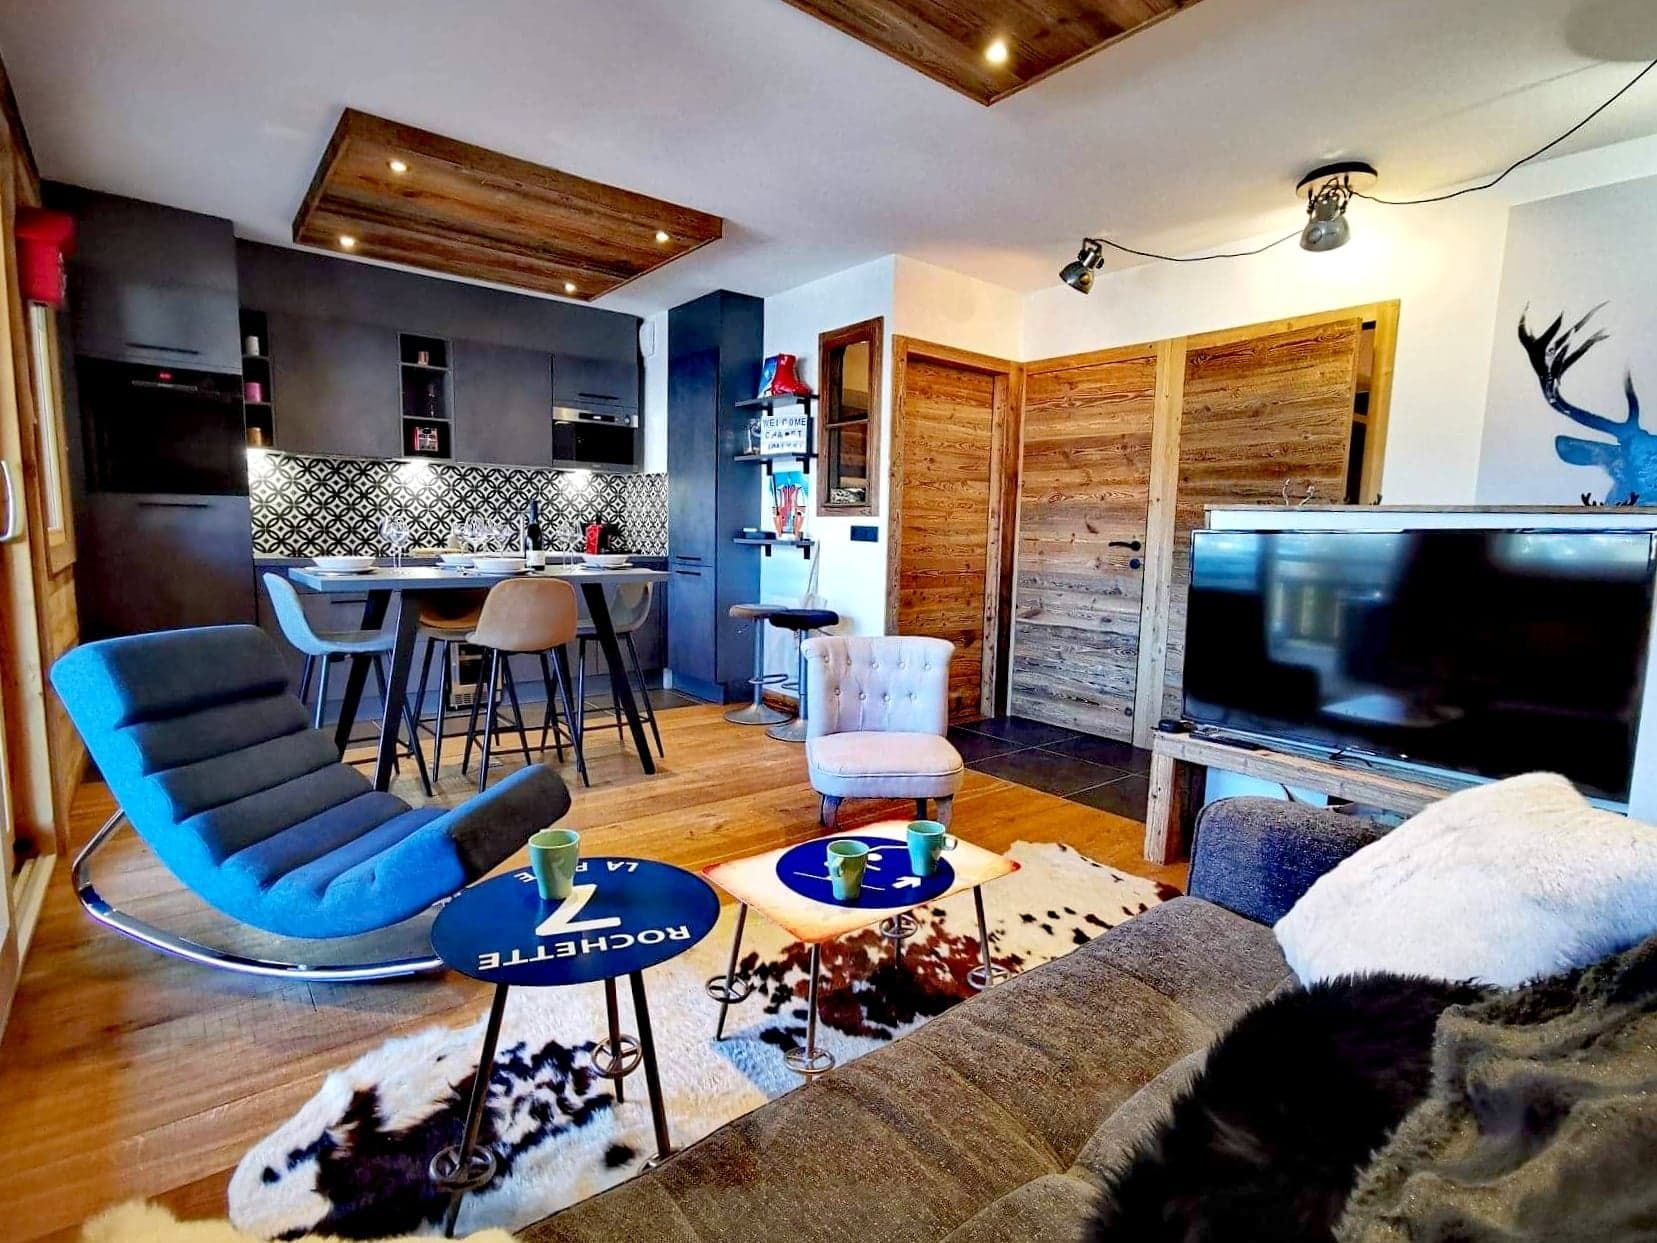 Appartement 2 chambres à vendre à Praz de Lys Sommand, Alpes françaises